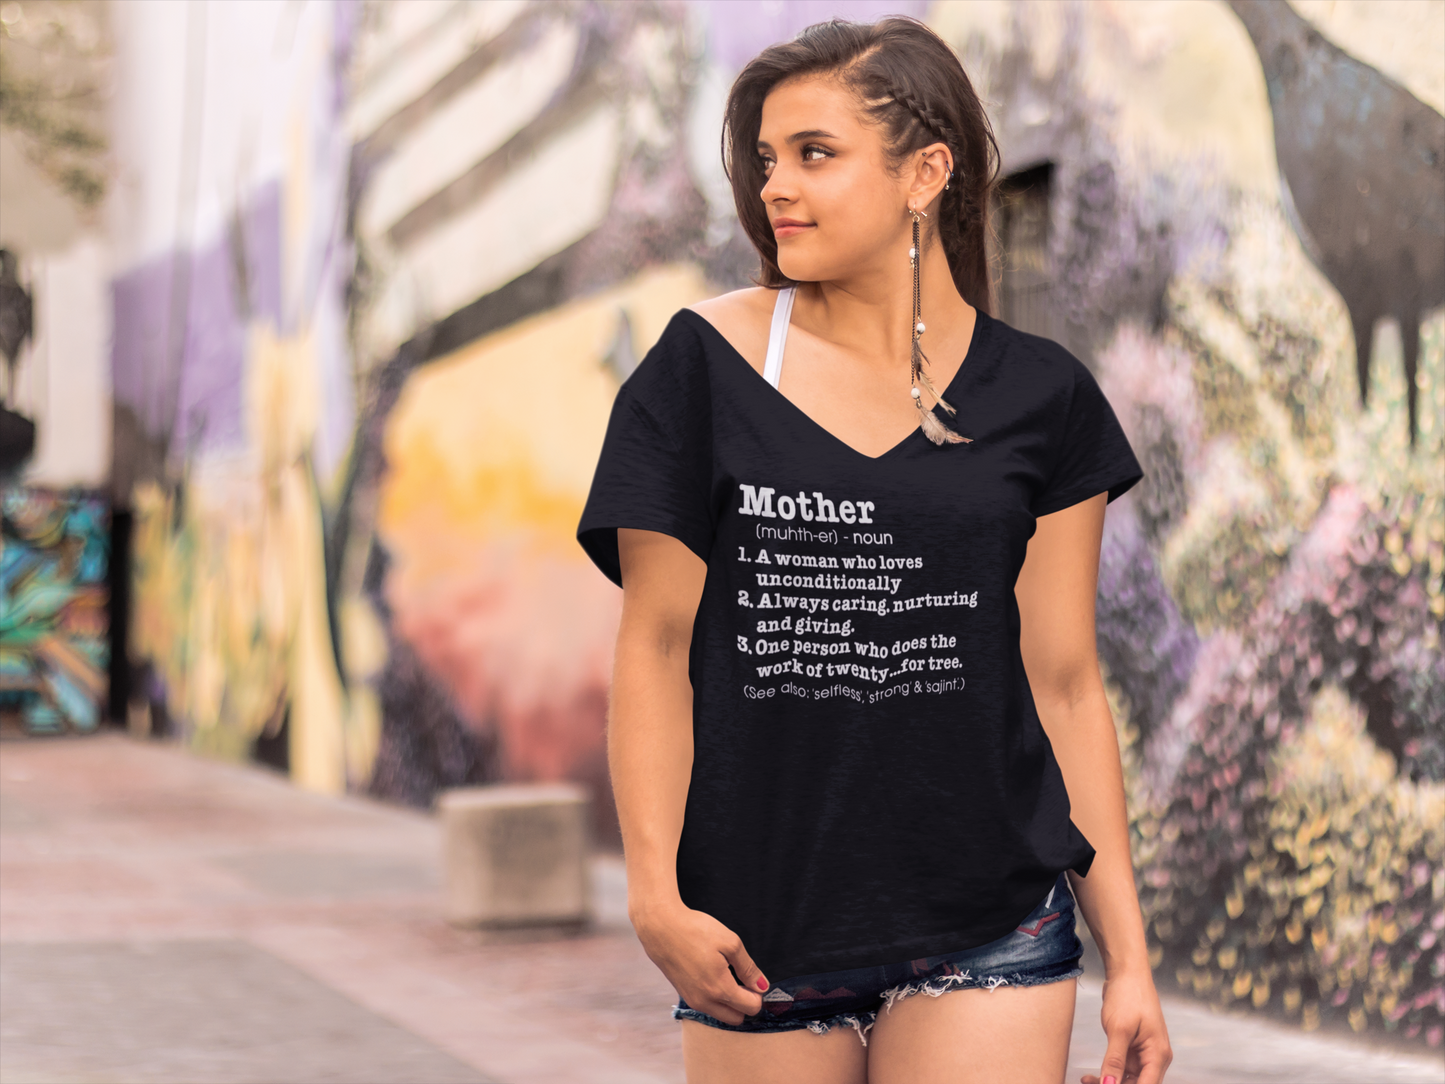 ULTRABASIC Women's Novelty T-Shirt Mother Definition - Short Sleeve Tee Shirt Tops